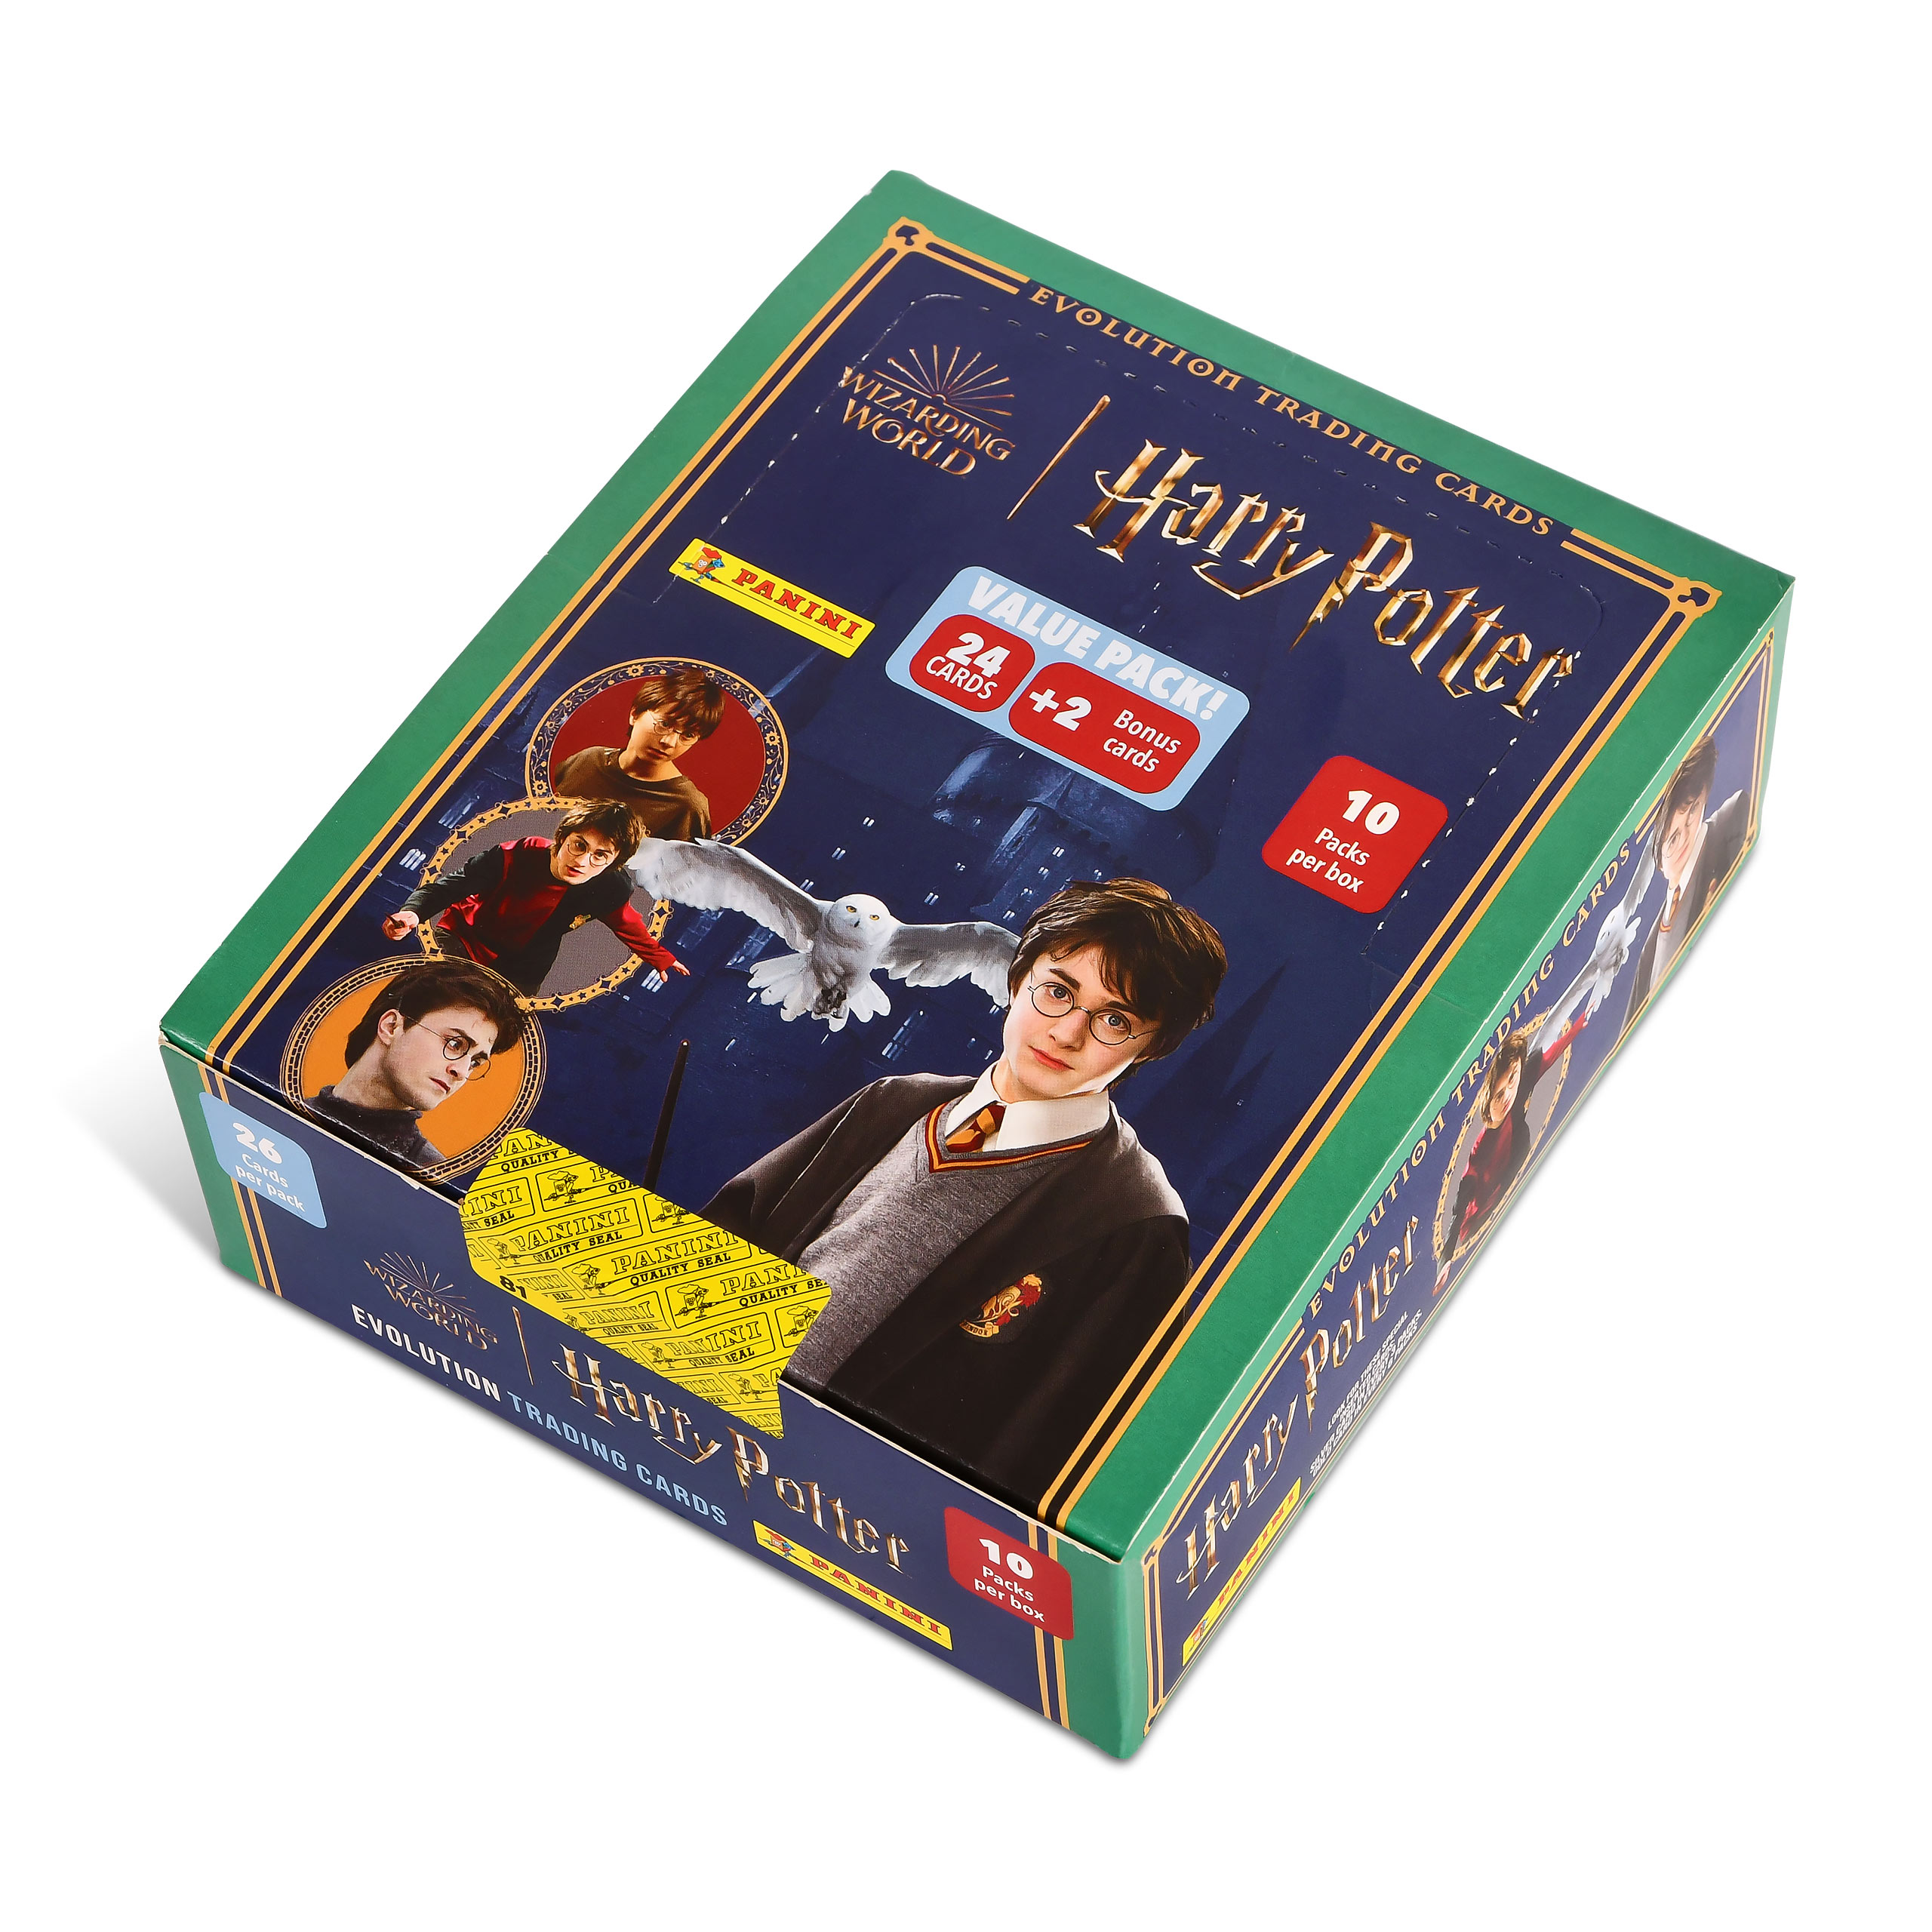 Harry Potter - Evolution Cartes à échanger Fatpack Box